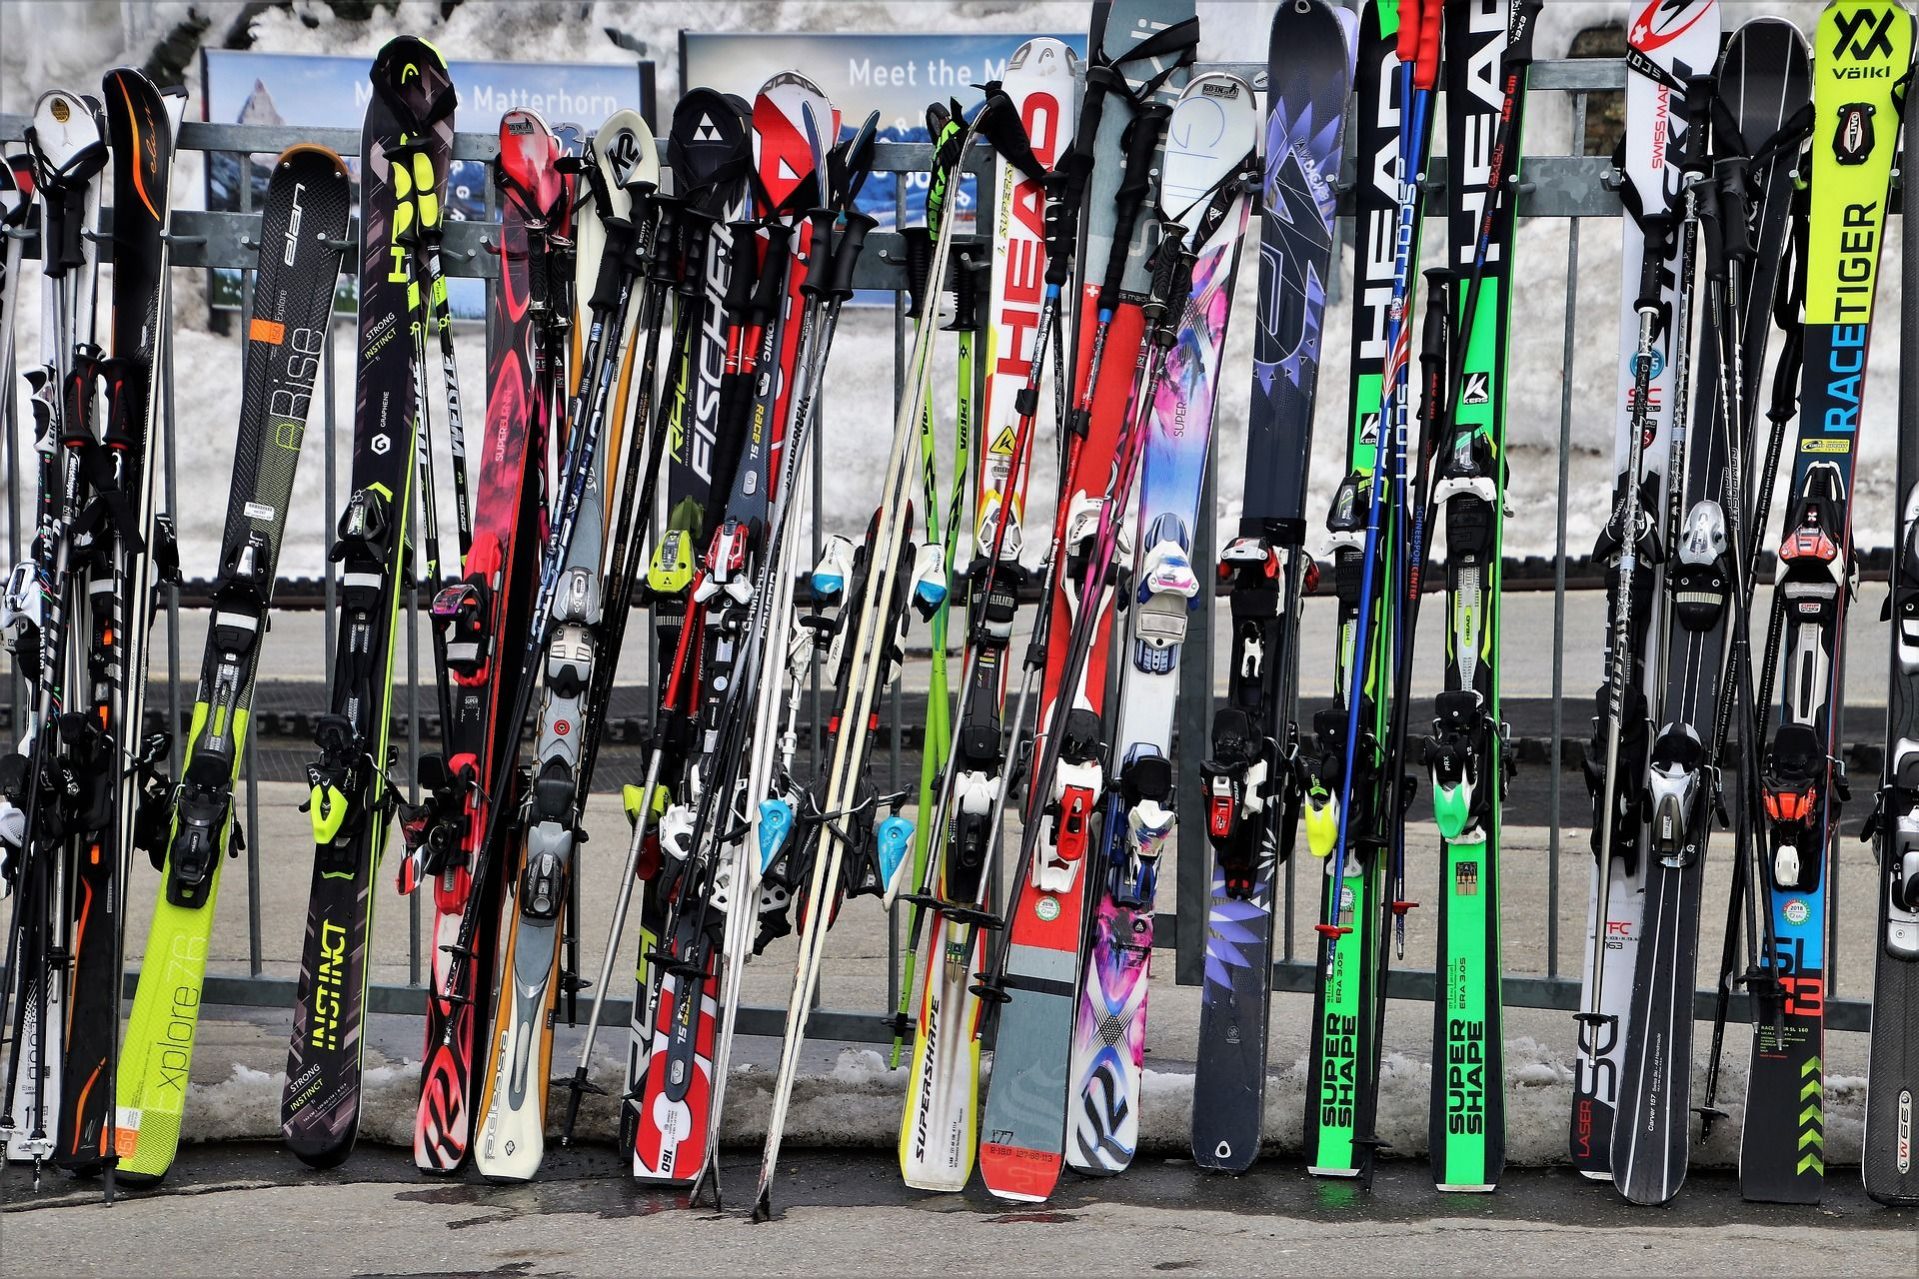 Muchos esquís apoyados antes de restaurante